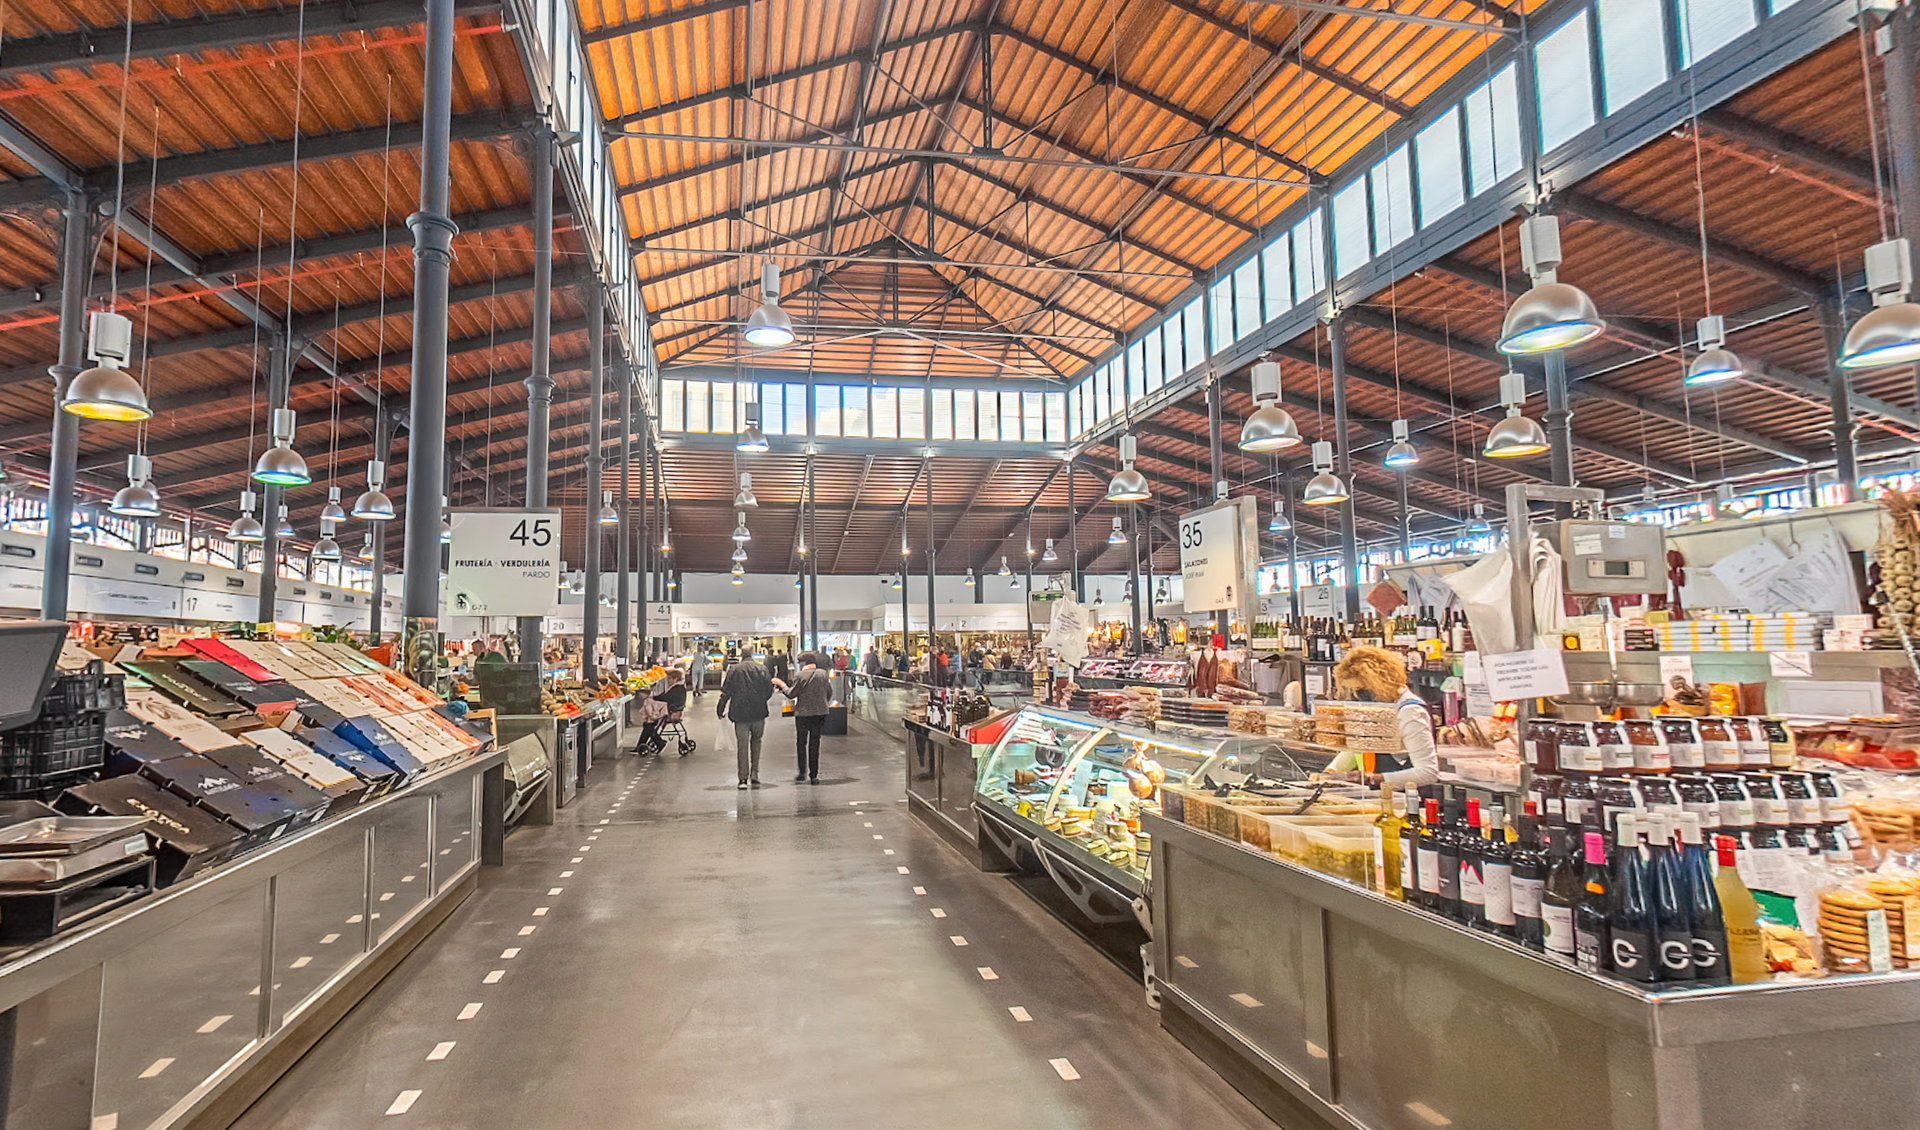 Mercado Central by Google Earth